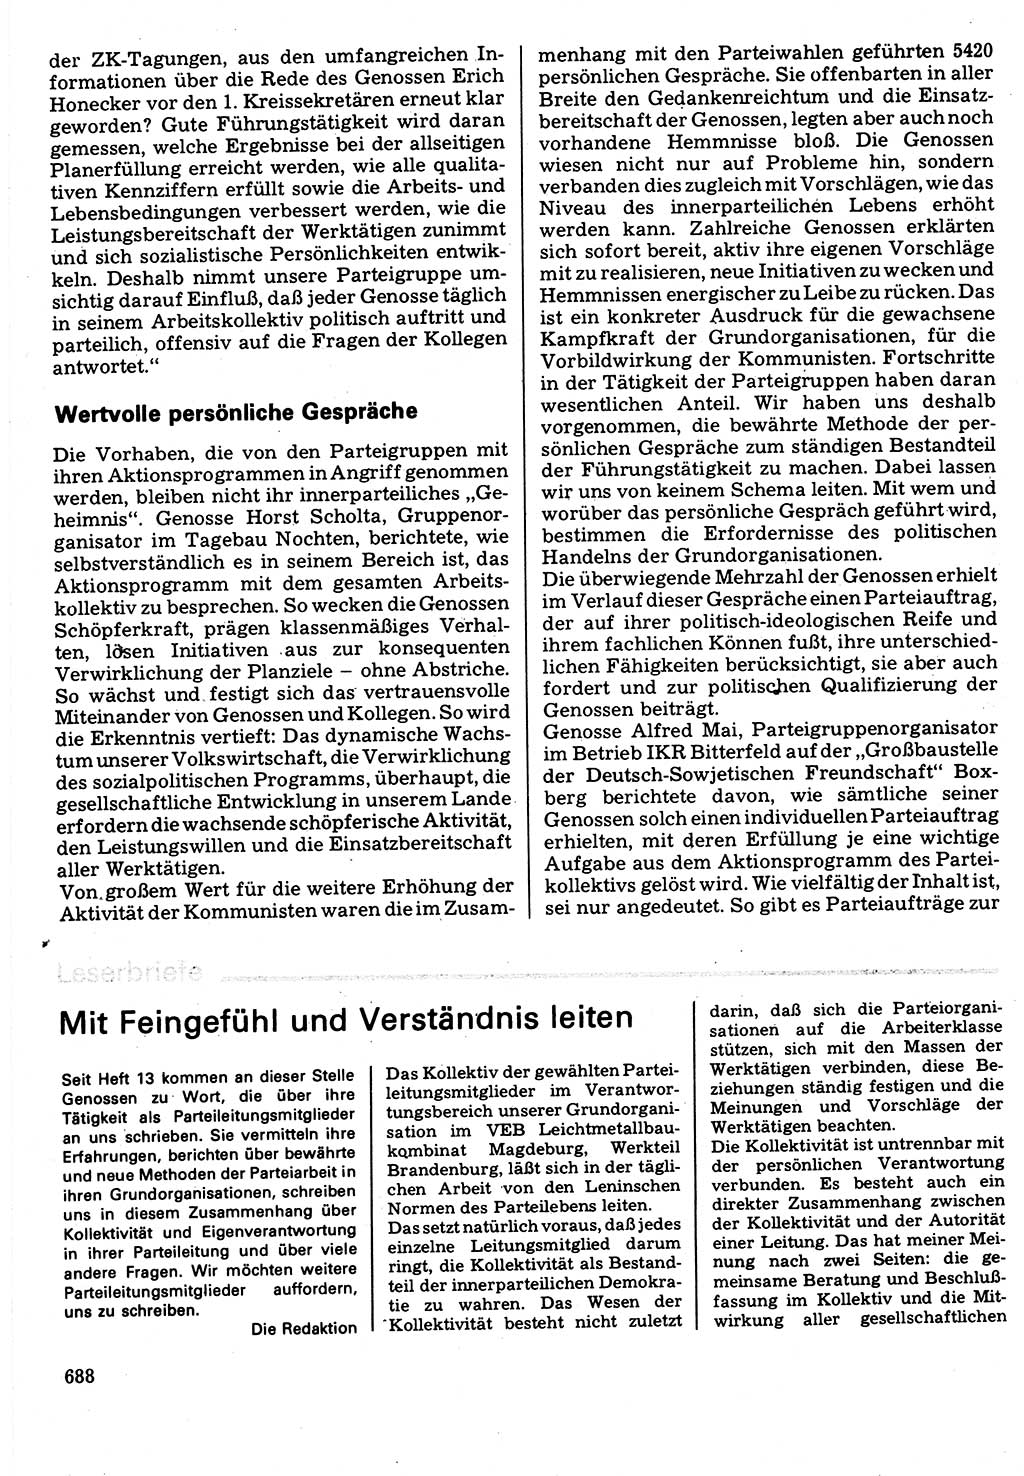 Neuer Weg (NW), Organ des Zentralkomitees (ZK) der SED (Sozialistische Einheitspartei Deutschlands) für Fragen des Parteilebens, 32. Jahrgang [Deutsche Demokratische Republik (DDR)] 1977, Seite 688 (NW ZK SED DDR 1977, S. 688)